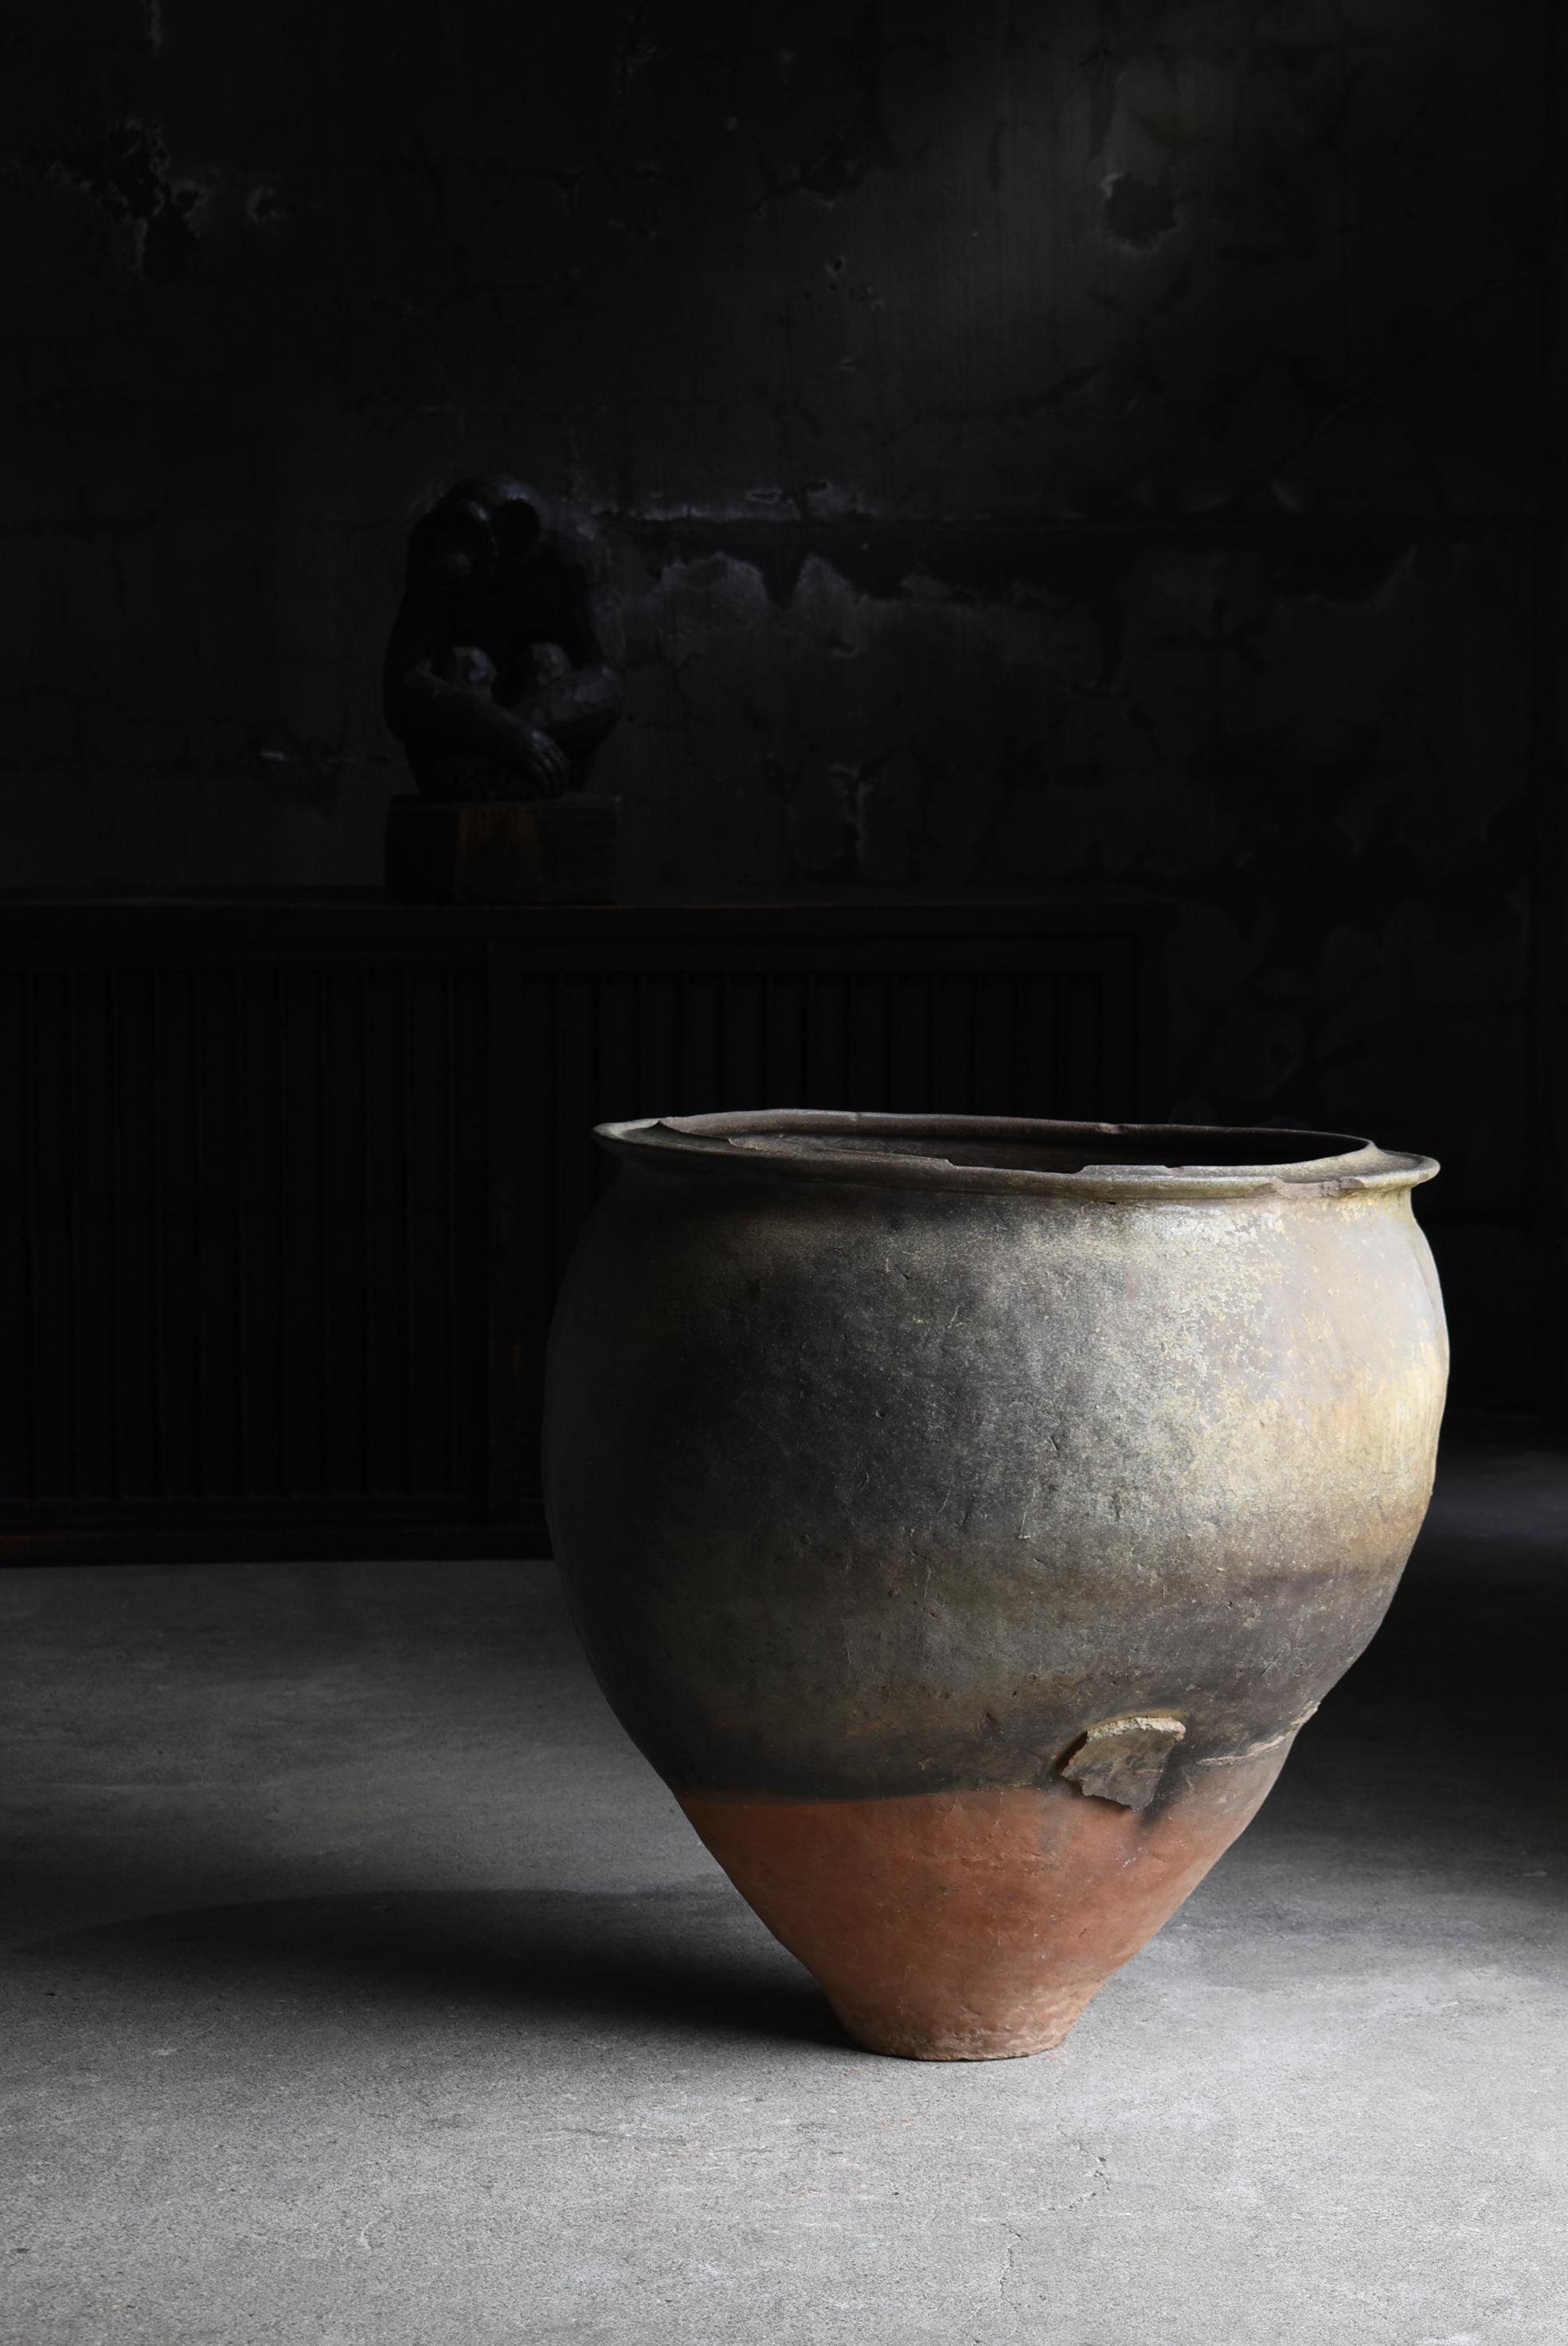 Il s'agit d'un très grand vase en poterie fabriqué au Japon.
Au Japon, on l'appelle 